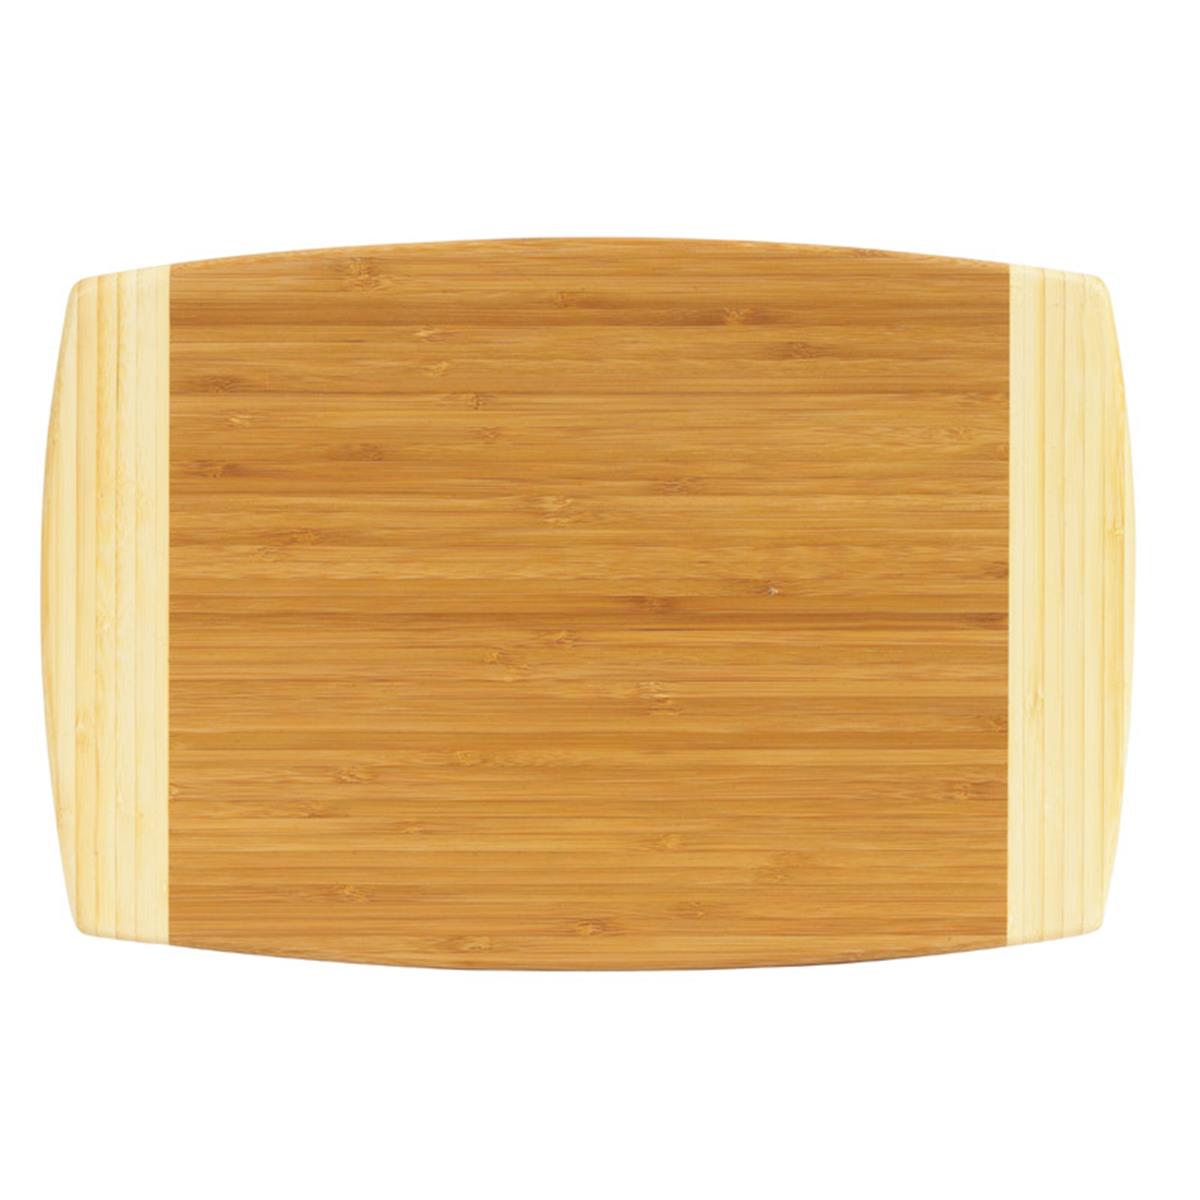 34-0004 10 X 15 In. Cutting Board Bamboo